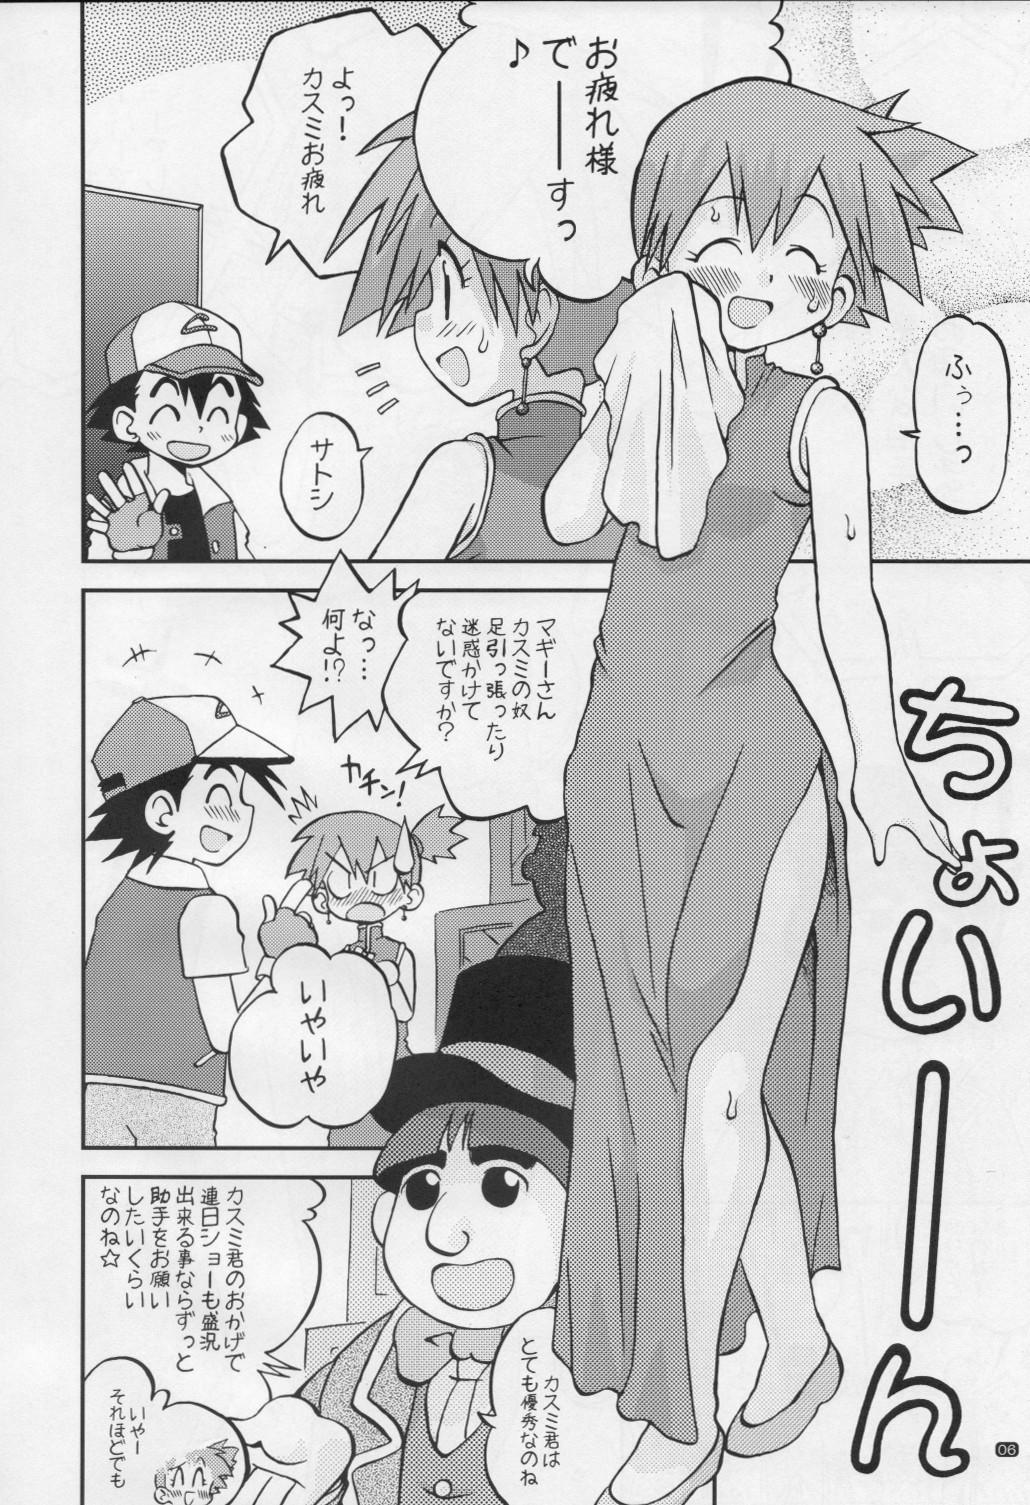 Piss Yume no Tsubomi wa Tsubomi no Mama dakedo - Pokemon Soft - Page 5